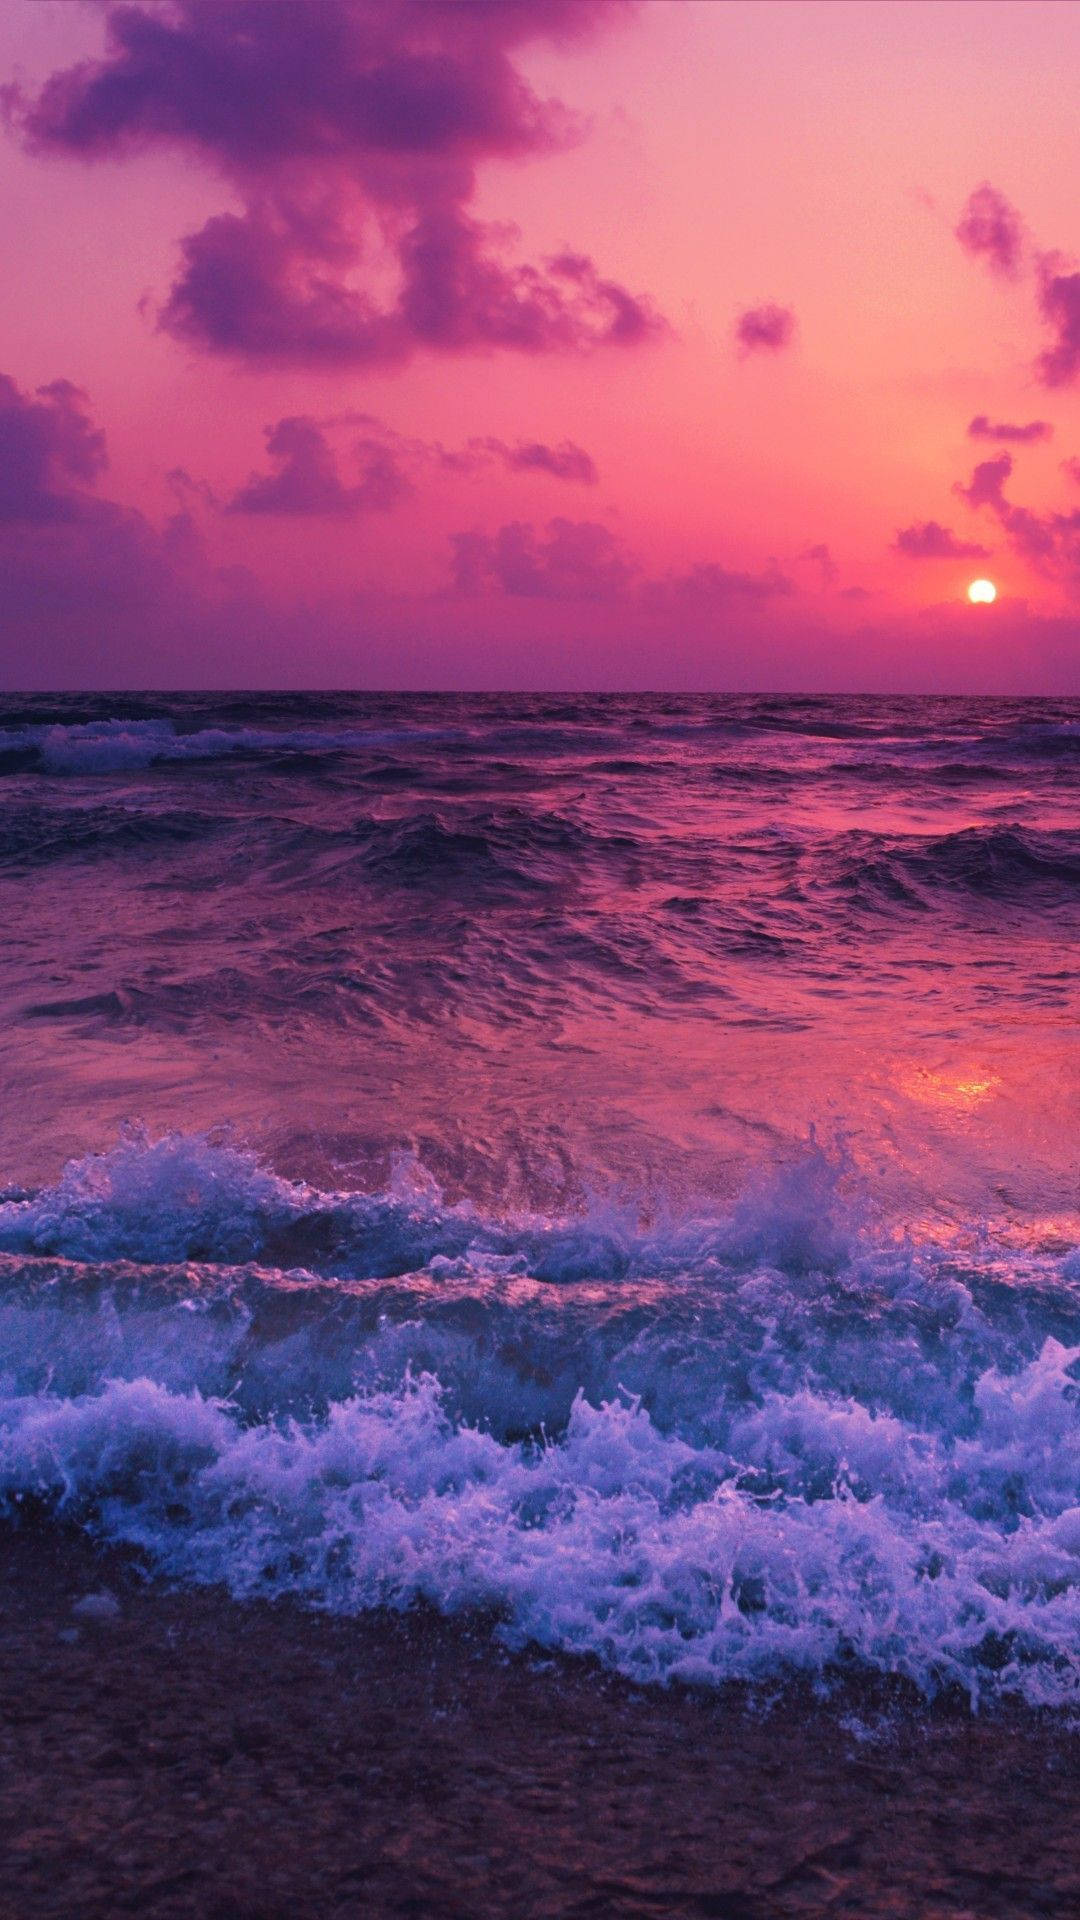 Raging Ocean Waves Over Aesthetic Sunset